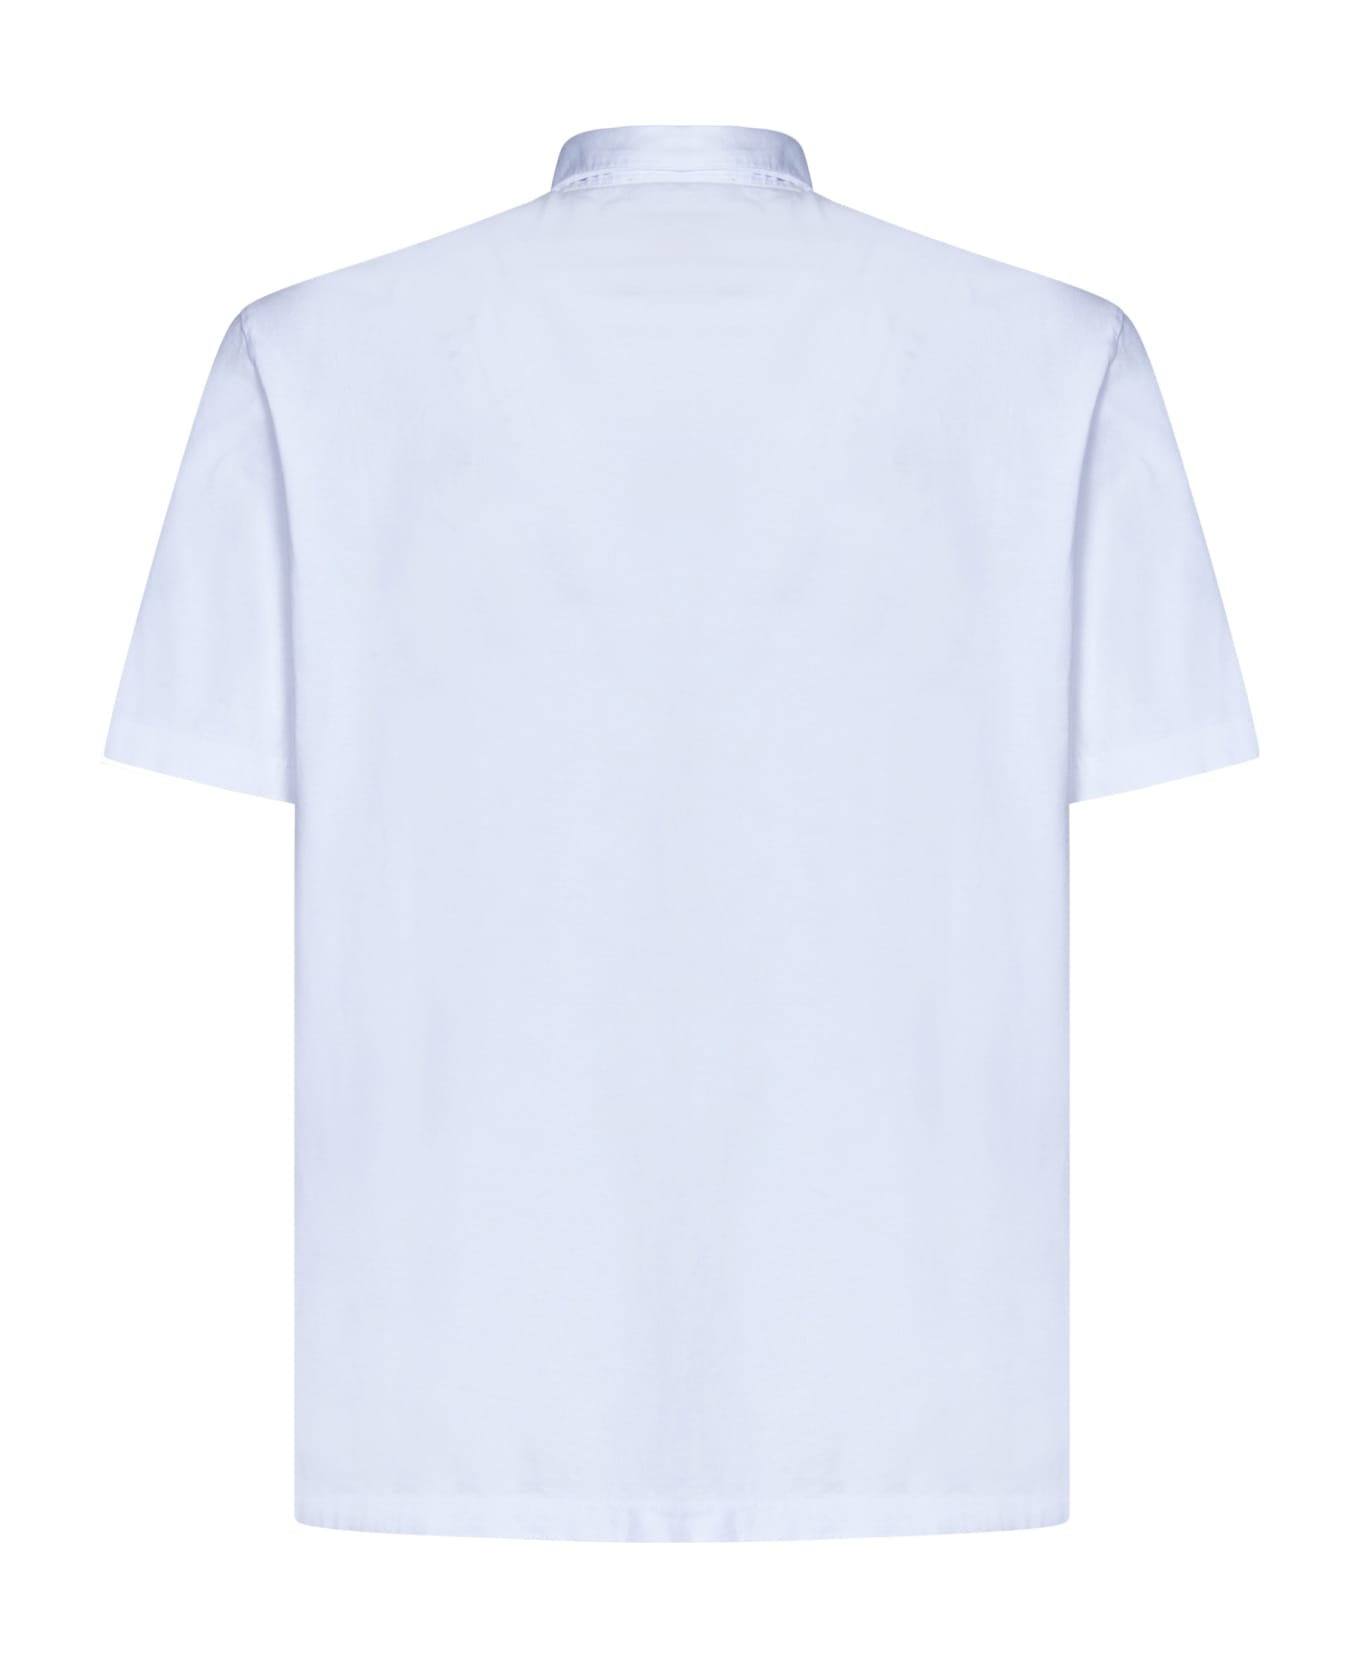 Boglioli Shirt - White ポロシャツ